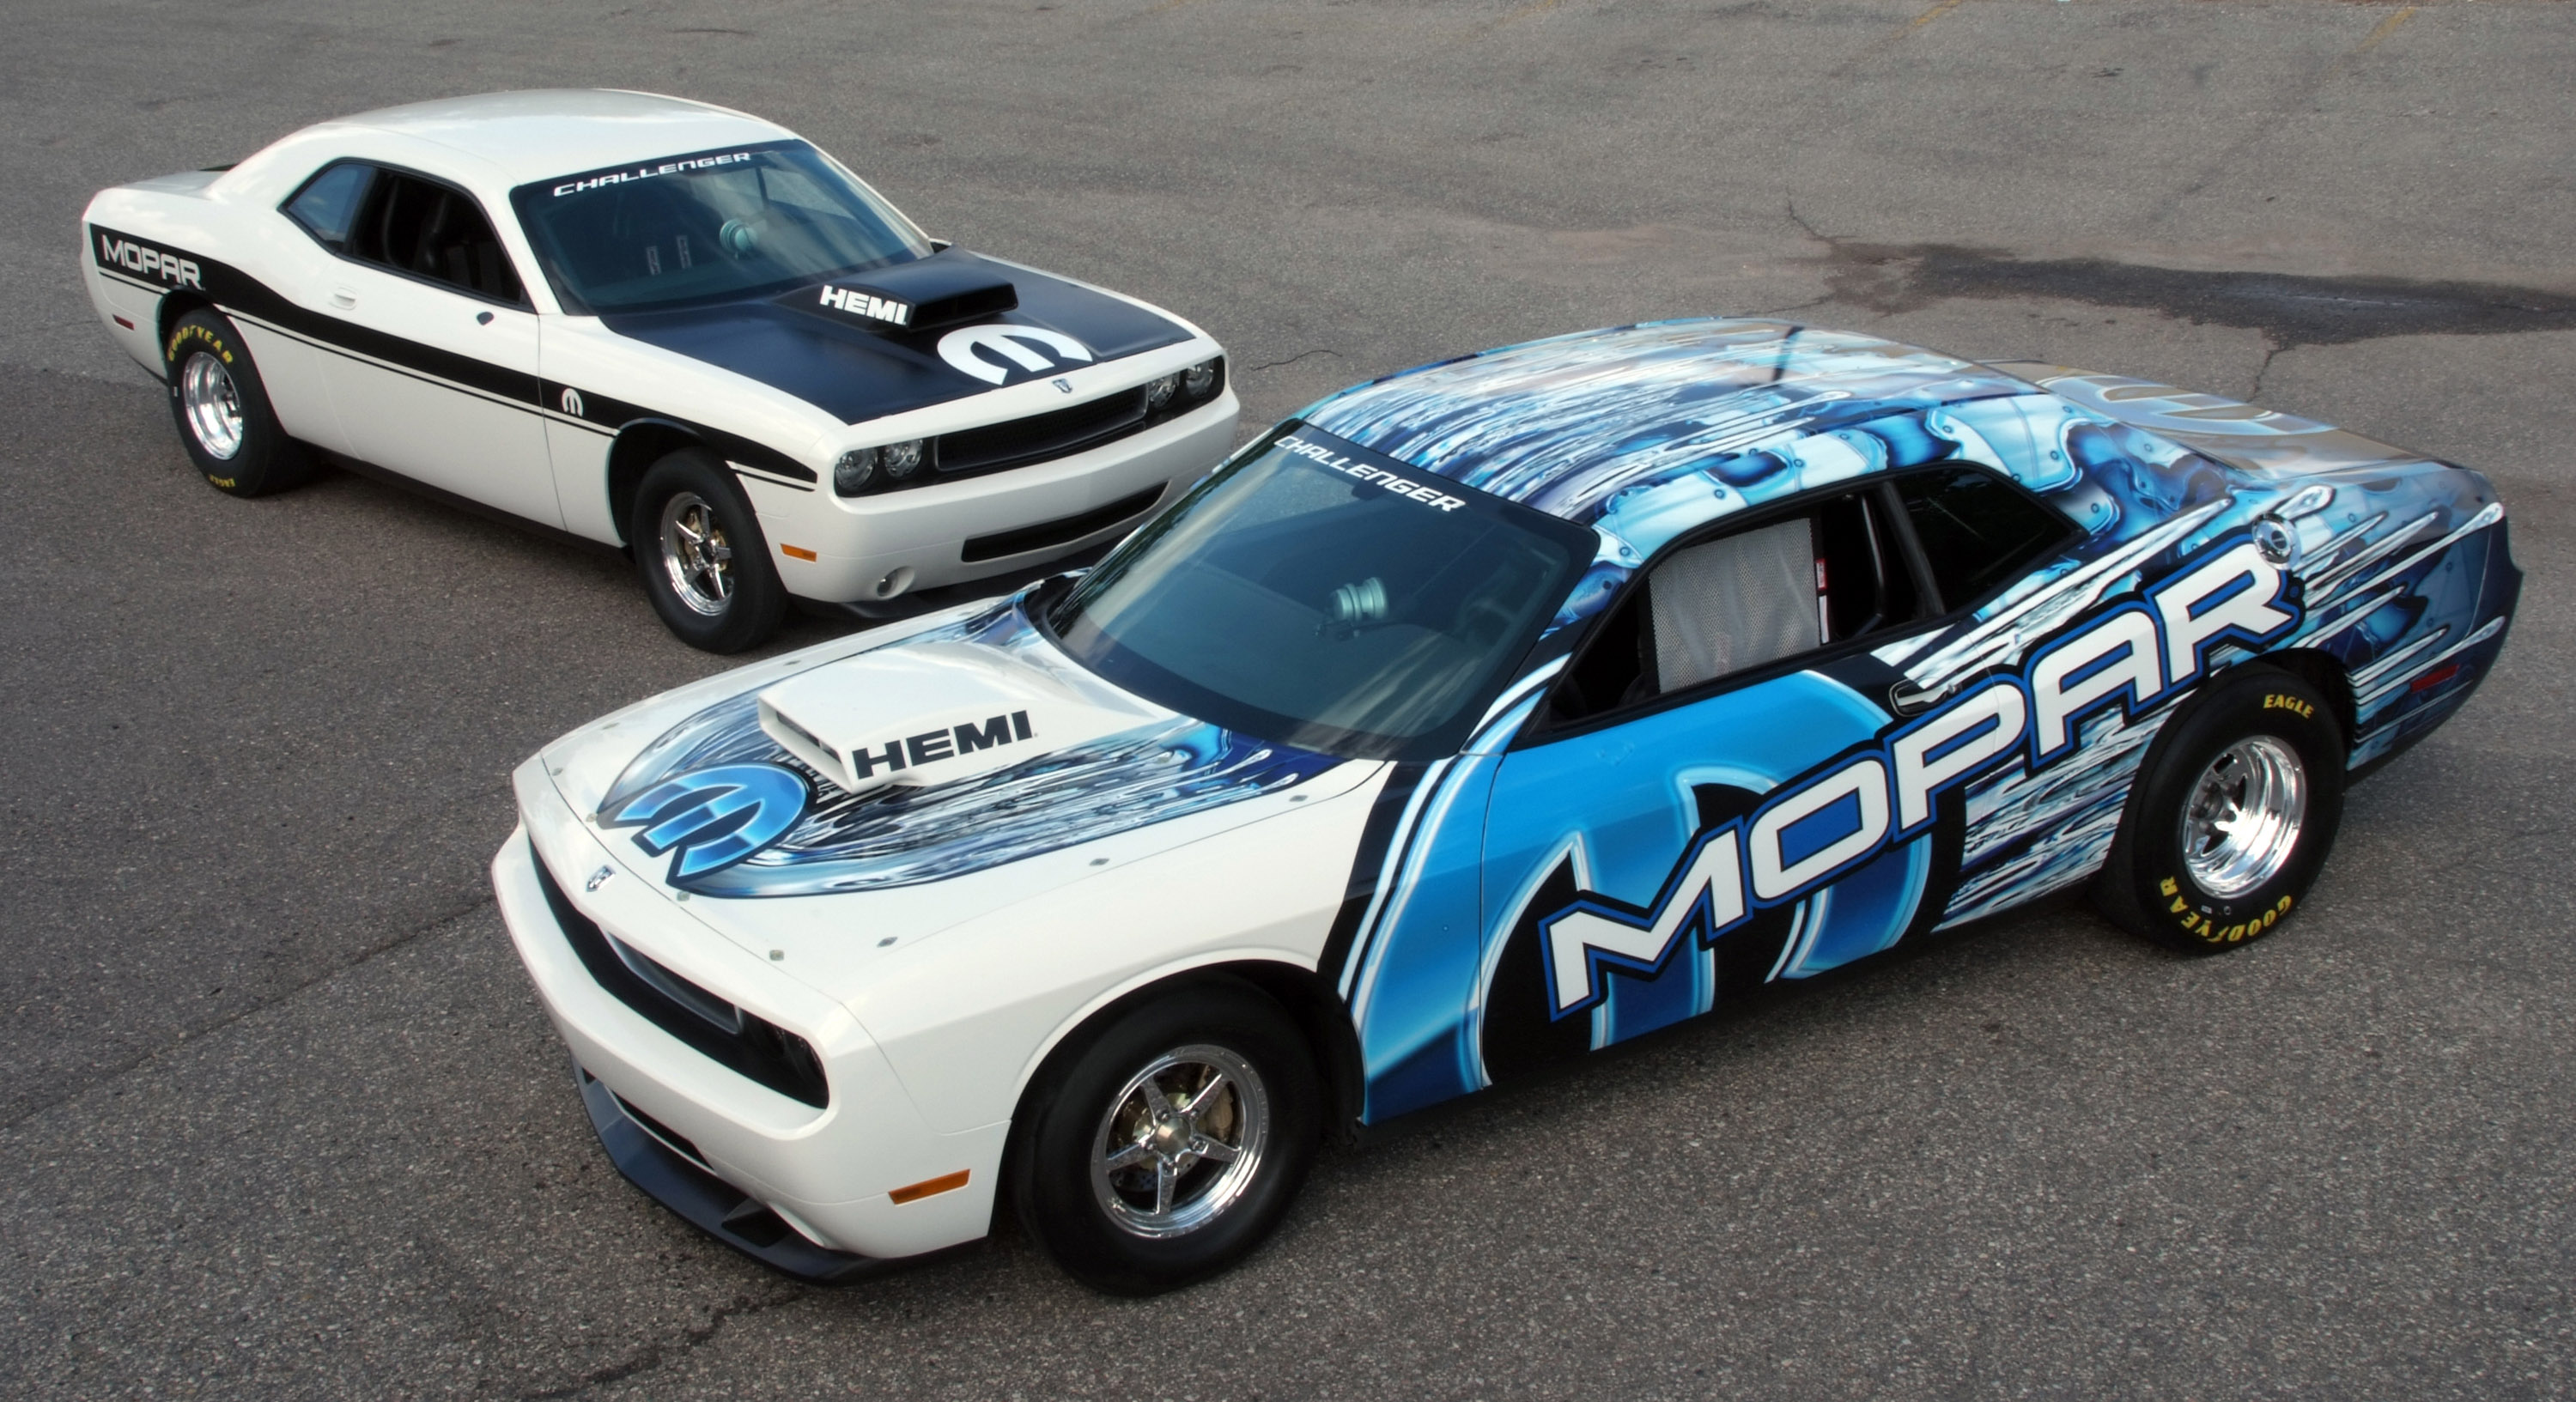 Mopar Dodge Challenger Drag Race Package